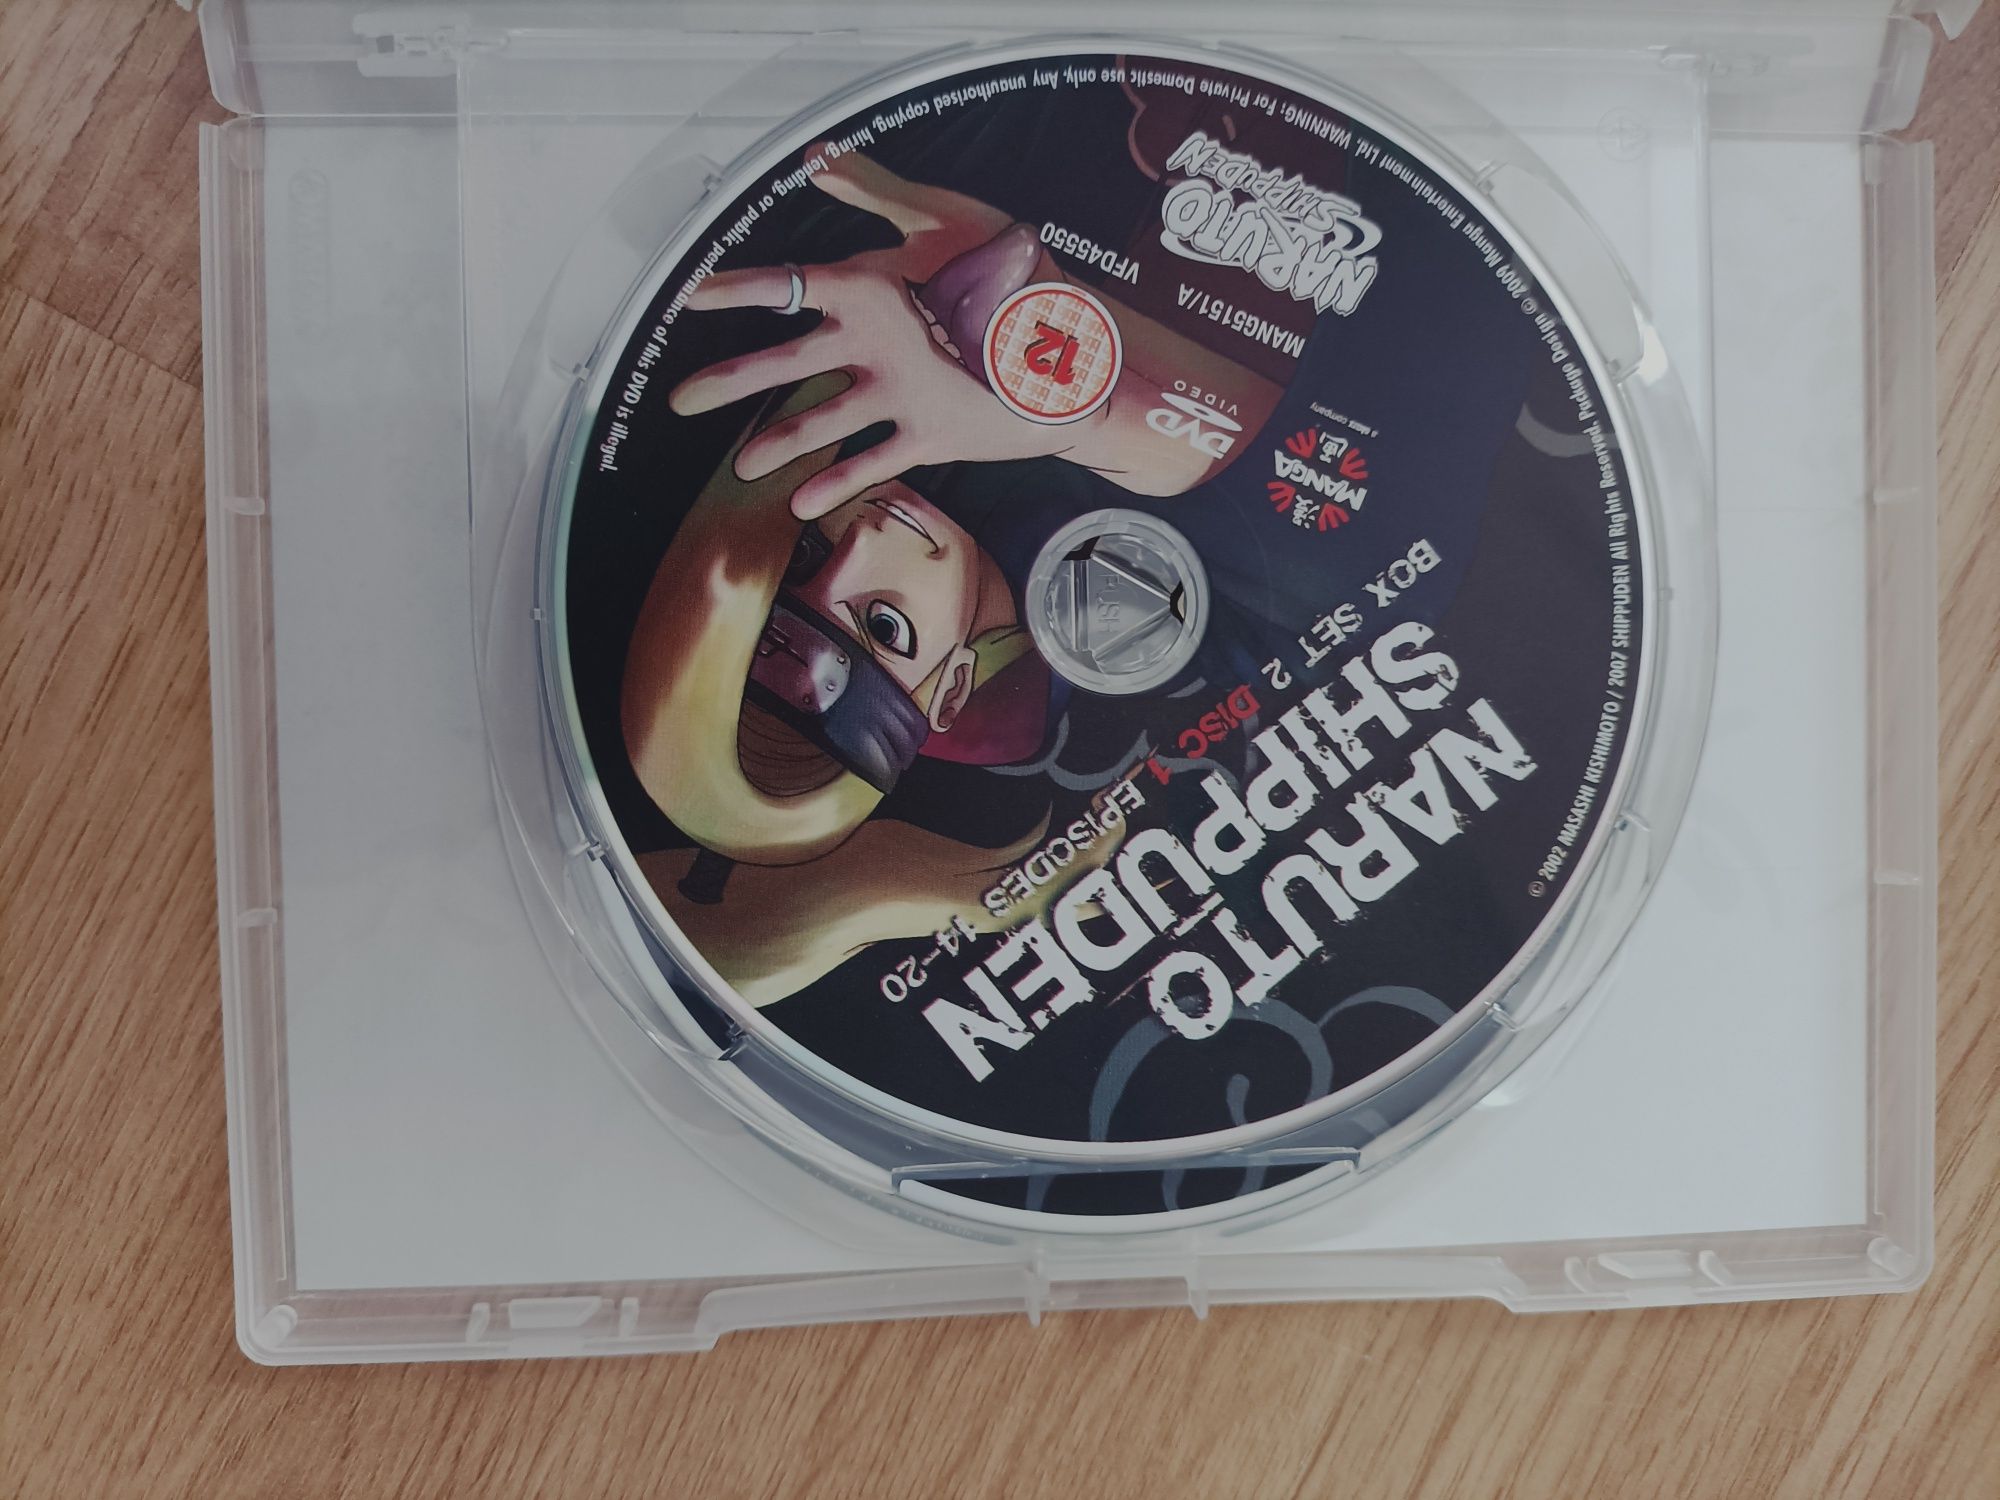 Naruto Shippuden DVD BOX set 2